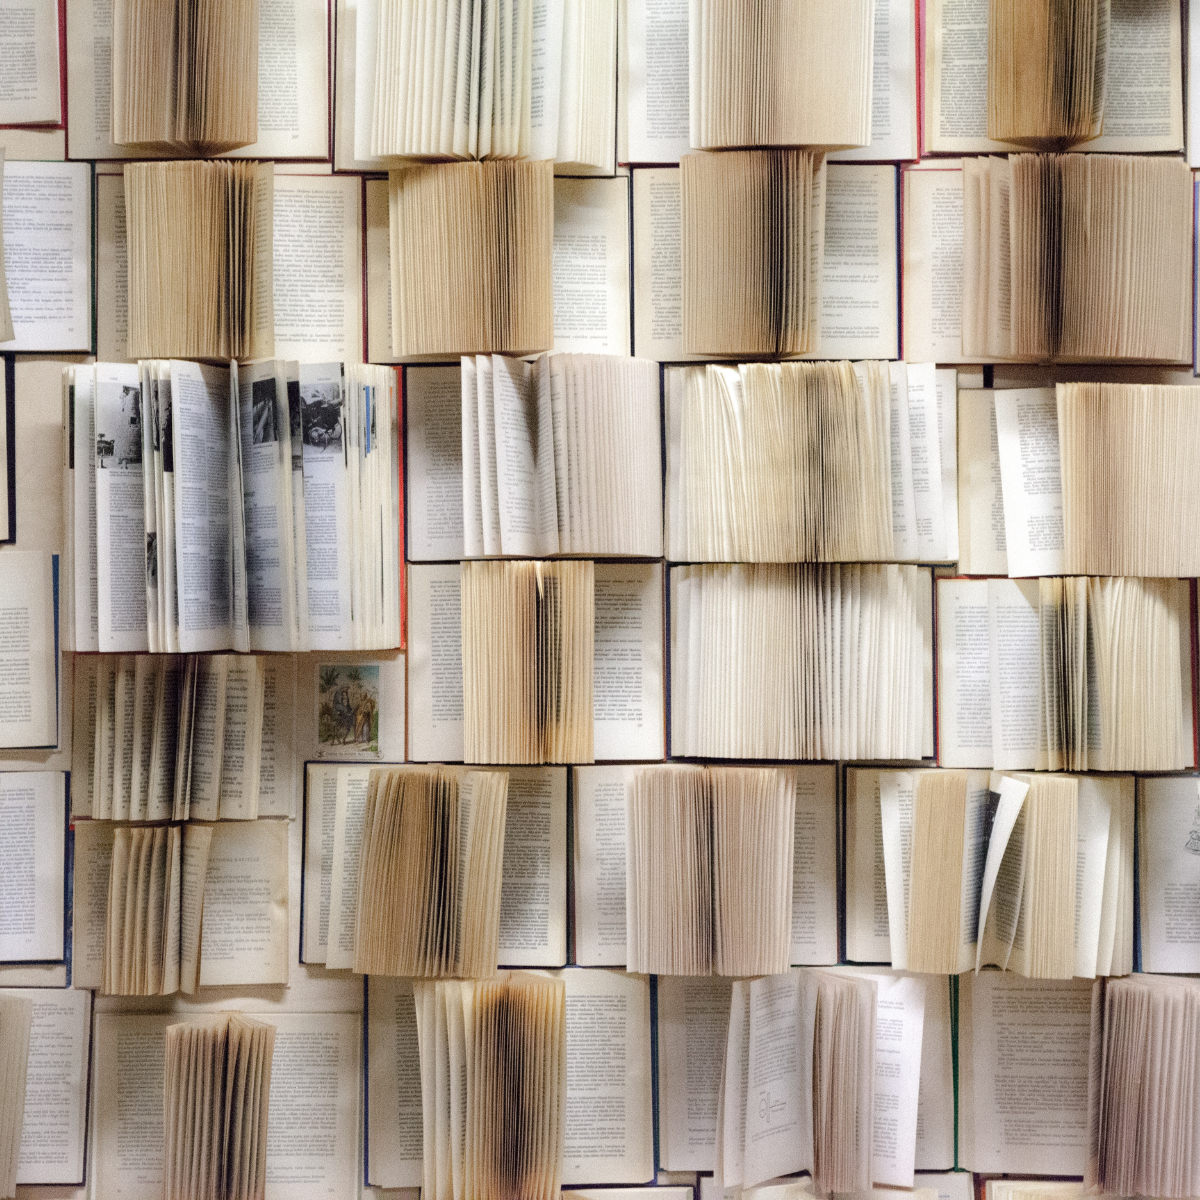 U biblioteci Univerziteta Harvard smeštena je knjiga čije korice su uvezane ljudskom kožom! / Foto: canva